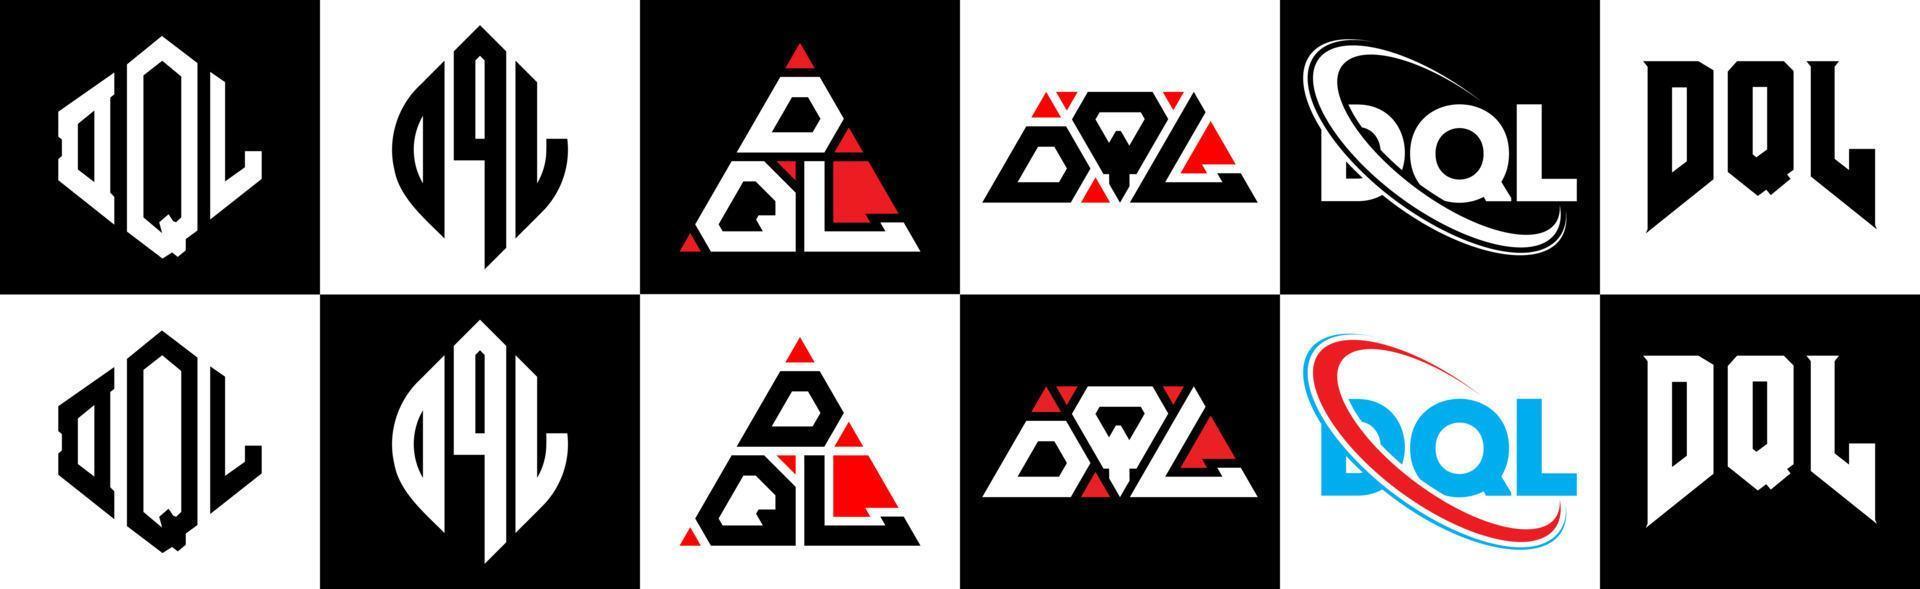 design de logotipo de letra dql em estilo seis. polígono dql, círculo, triângulo, hexágono, estilo plano e simples com logotipo de letra de variação de cor preto e branco definido em uma prancheta. dql logotipo minimalista e clássico vetor